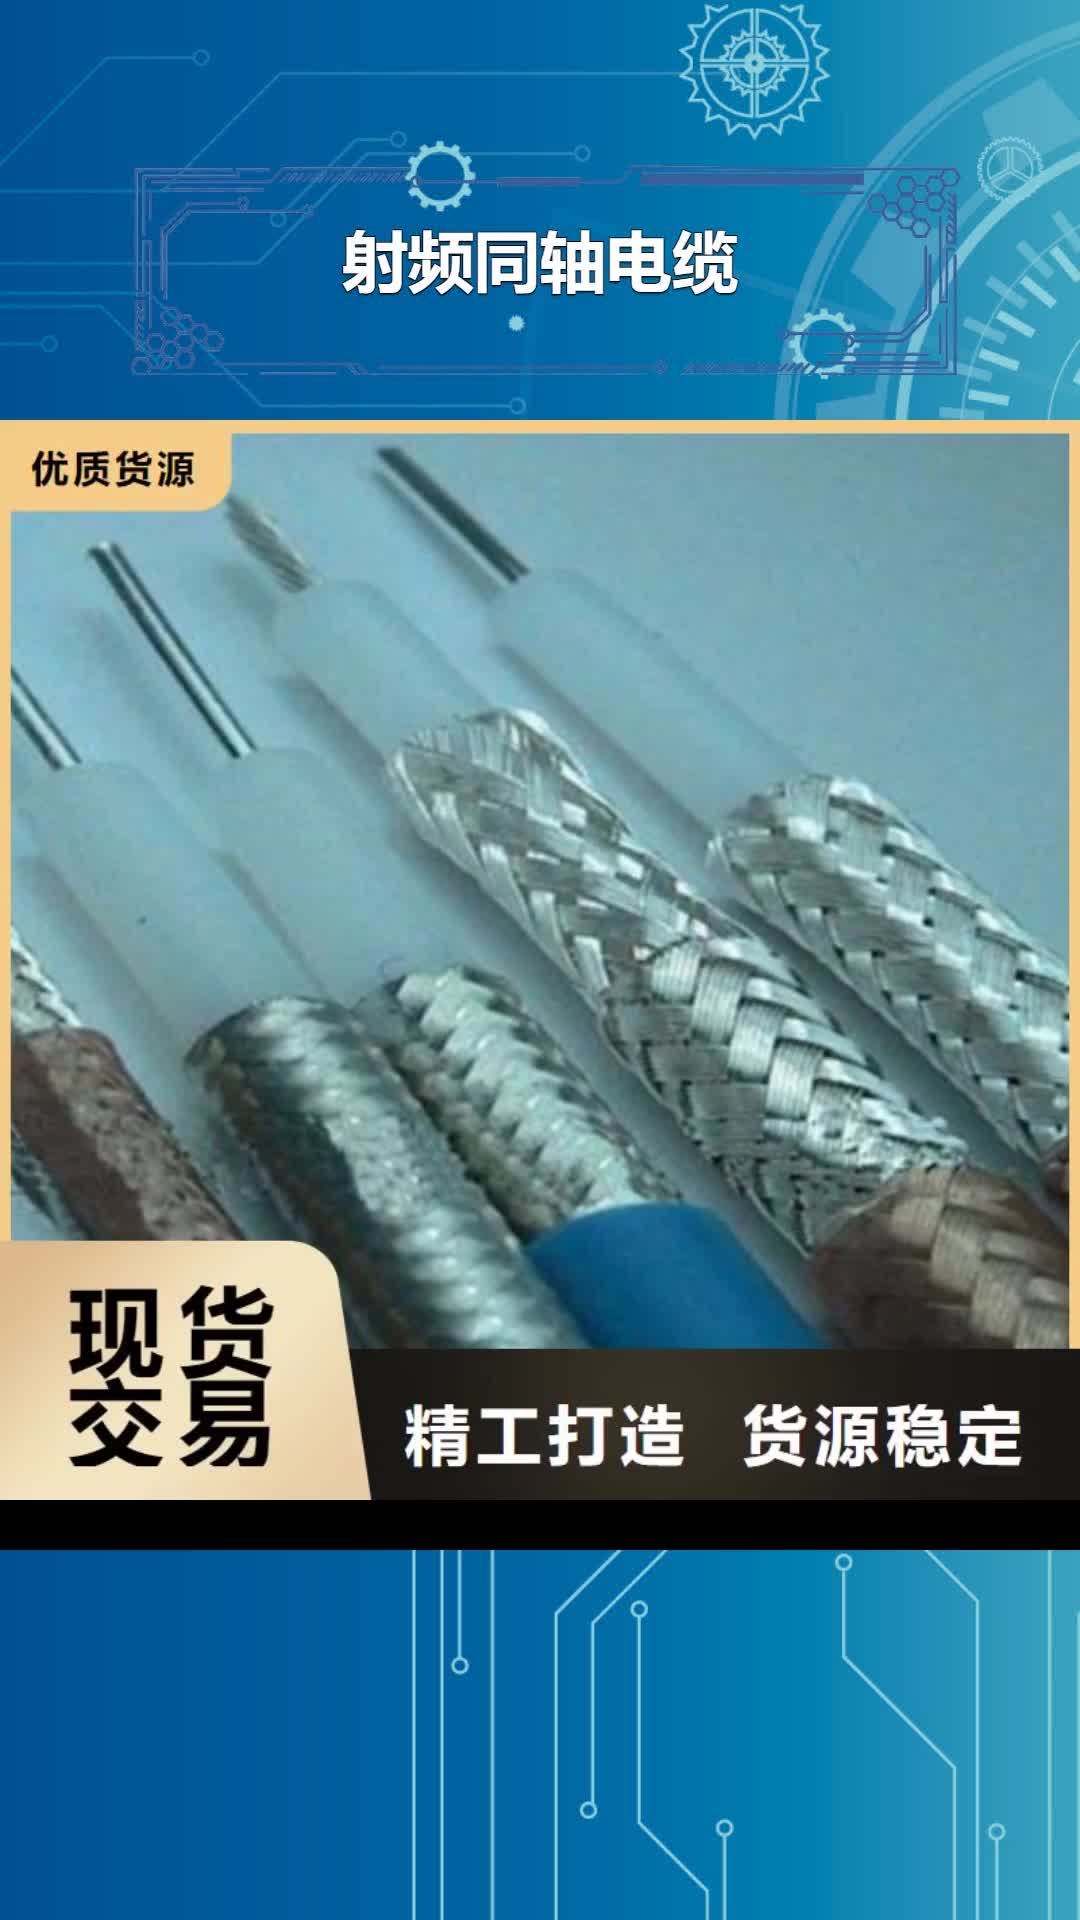 海南【射频同轴电缆】阻燃电缆厂家优质材料厂家直销